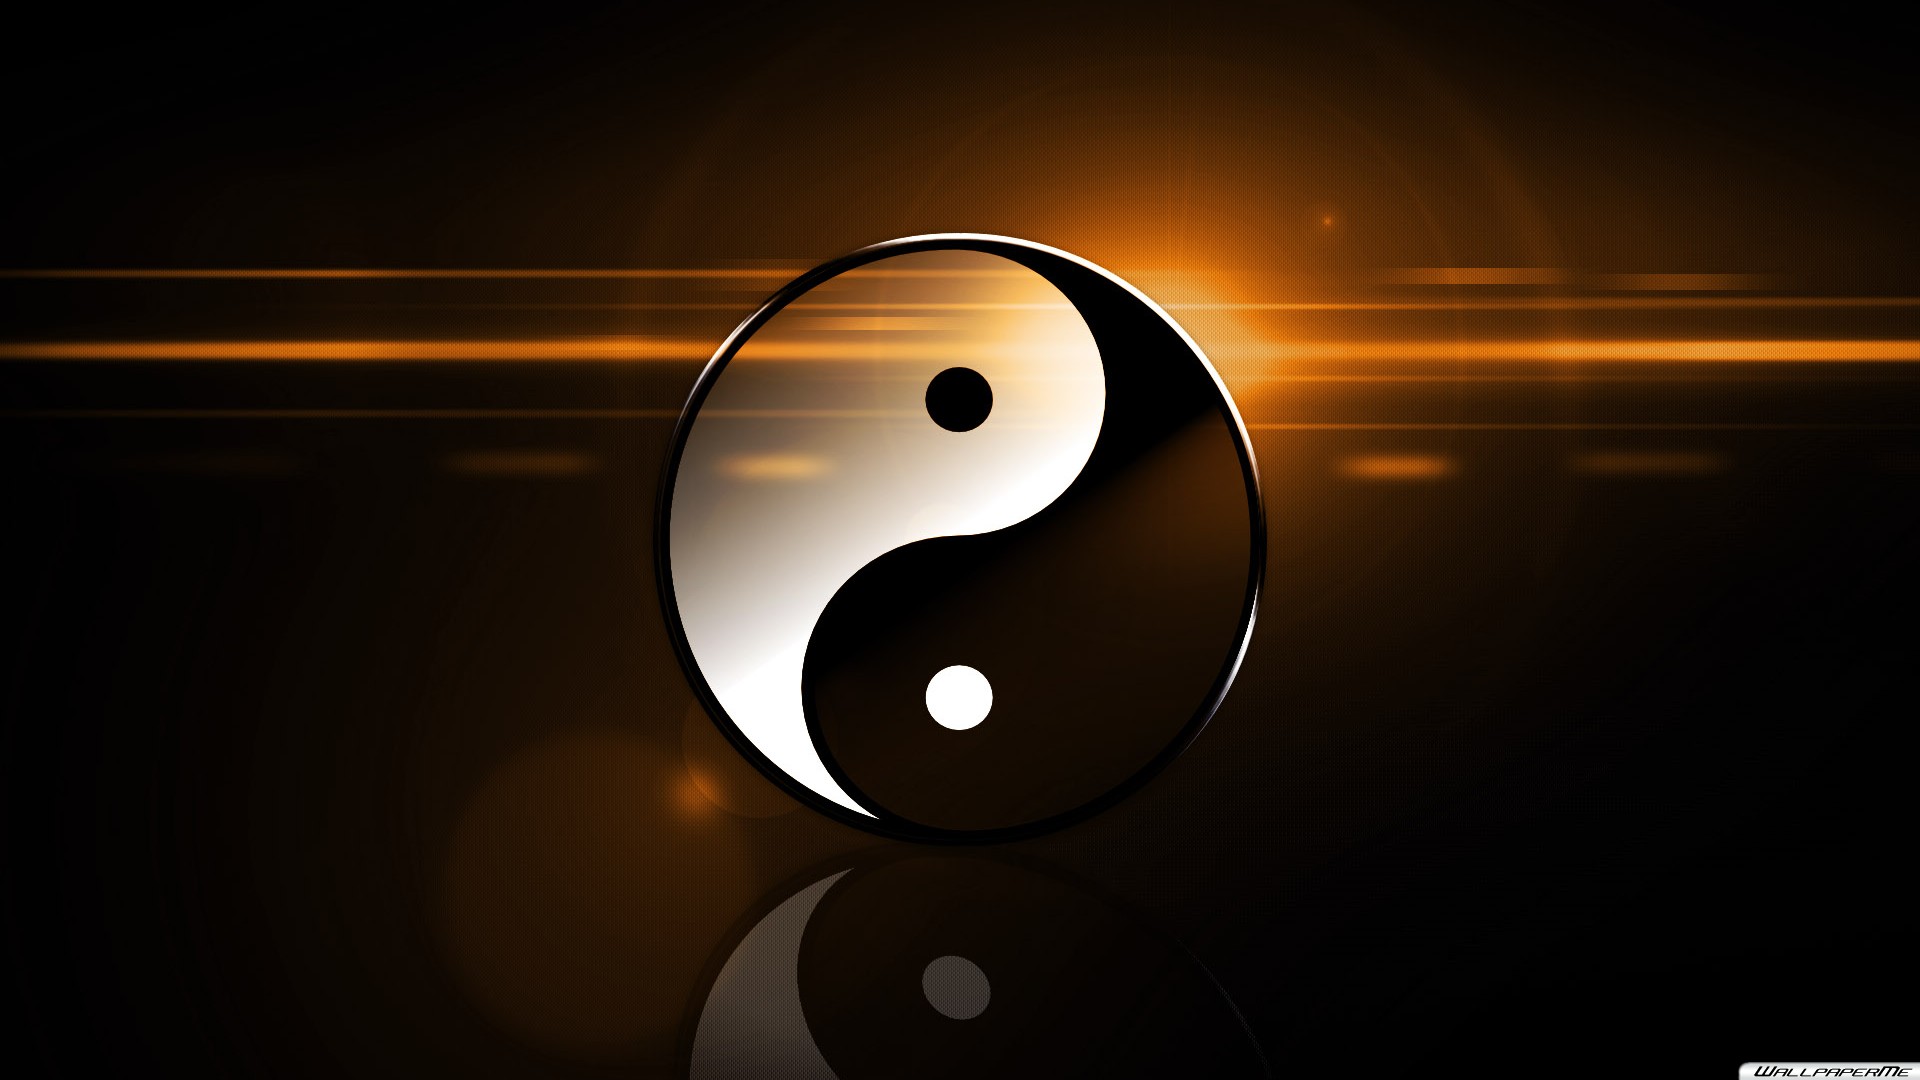 yin yang wallpaper desktop Car Pictures